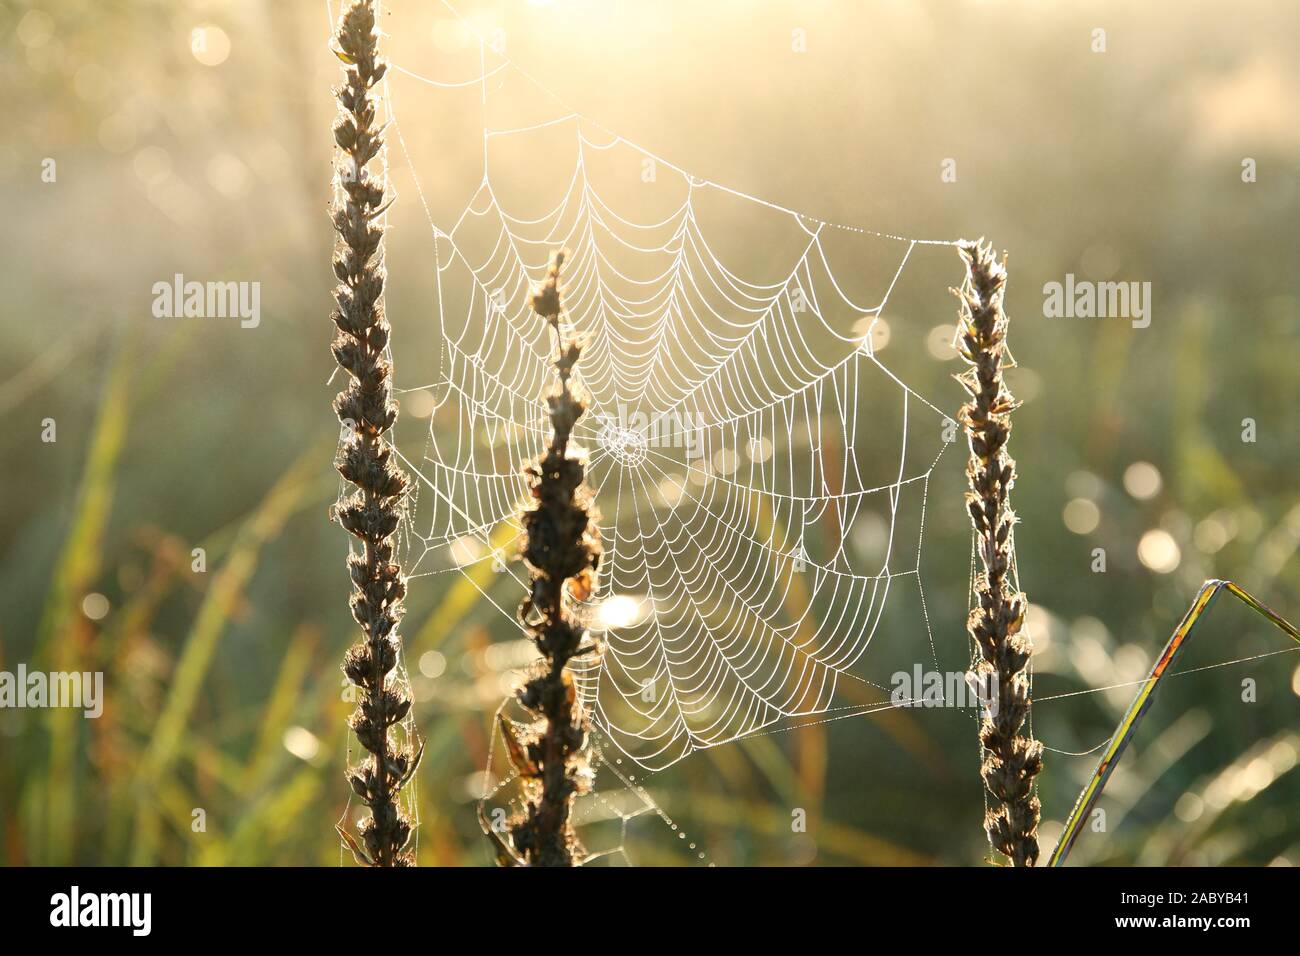 Spinnennetz auf einer Wiese von der aufgehenden Sonne beleuchtet. Stockfoto